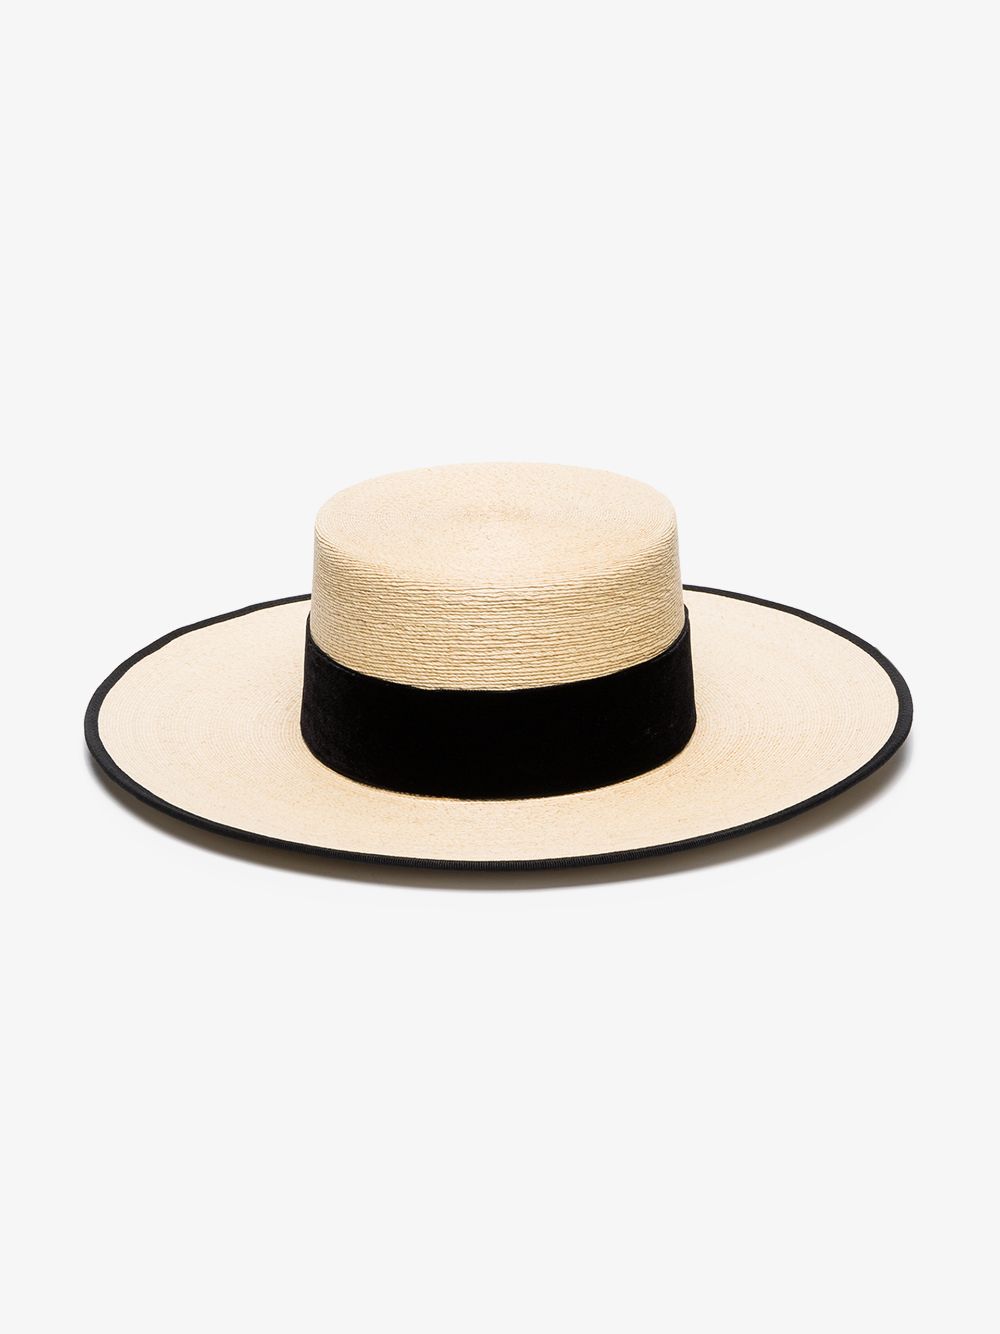 ELIURPI BLACK AND BEIGE CORDOBES STRAW HAT,Cordobes14732647